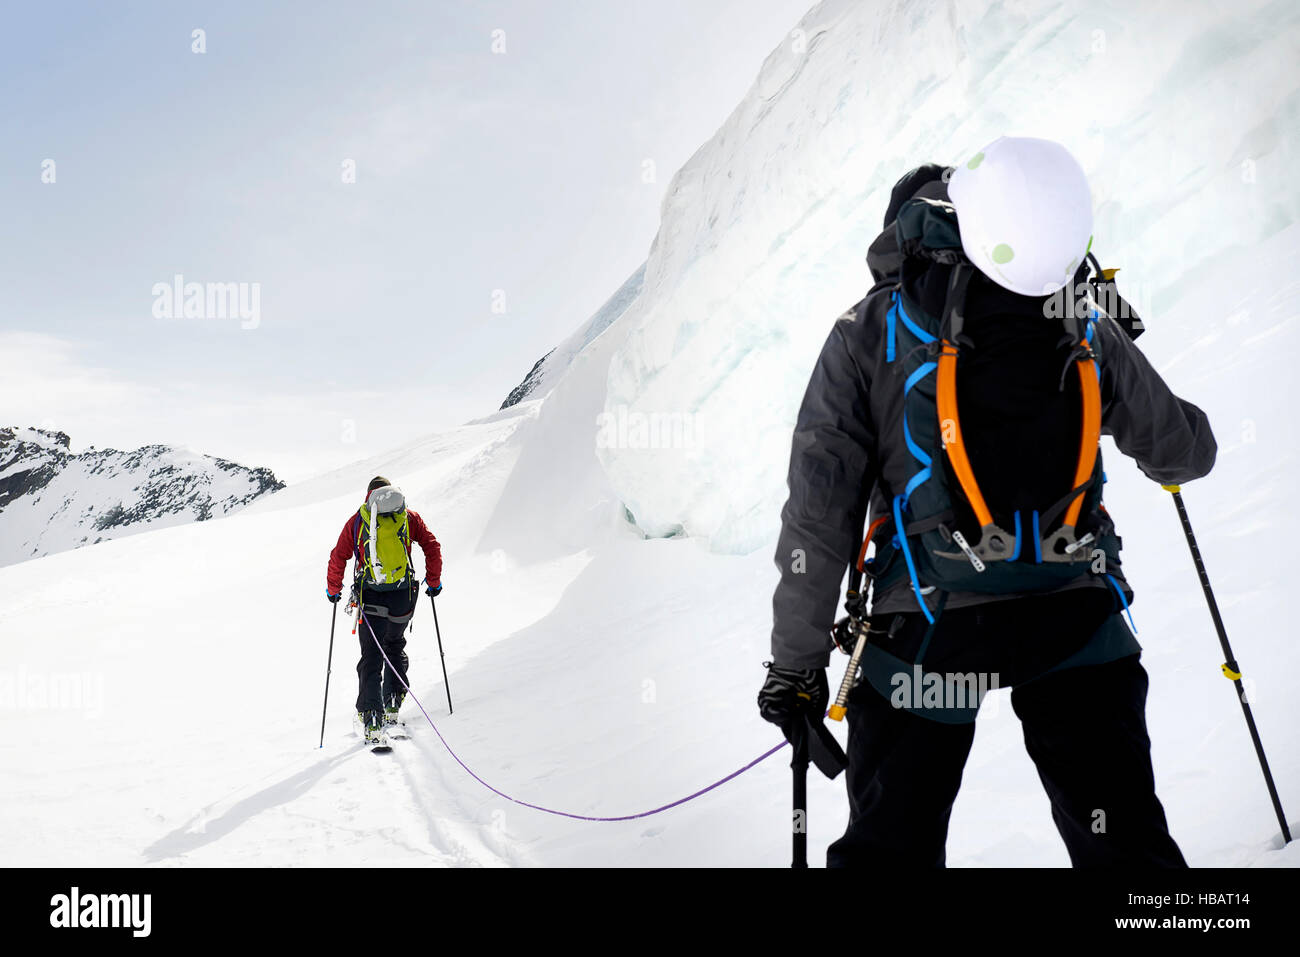 Vista posteriore di alpinisti sci alpinismo su neve montagna, Saas Fee, Svizzera Foto Stock